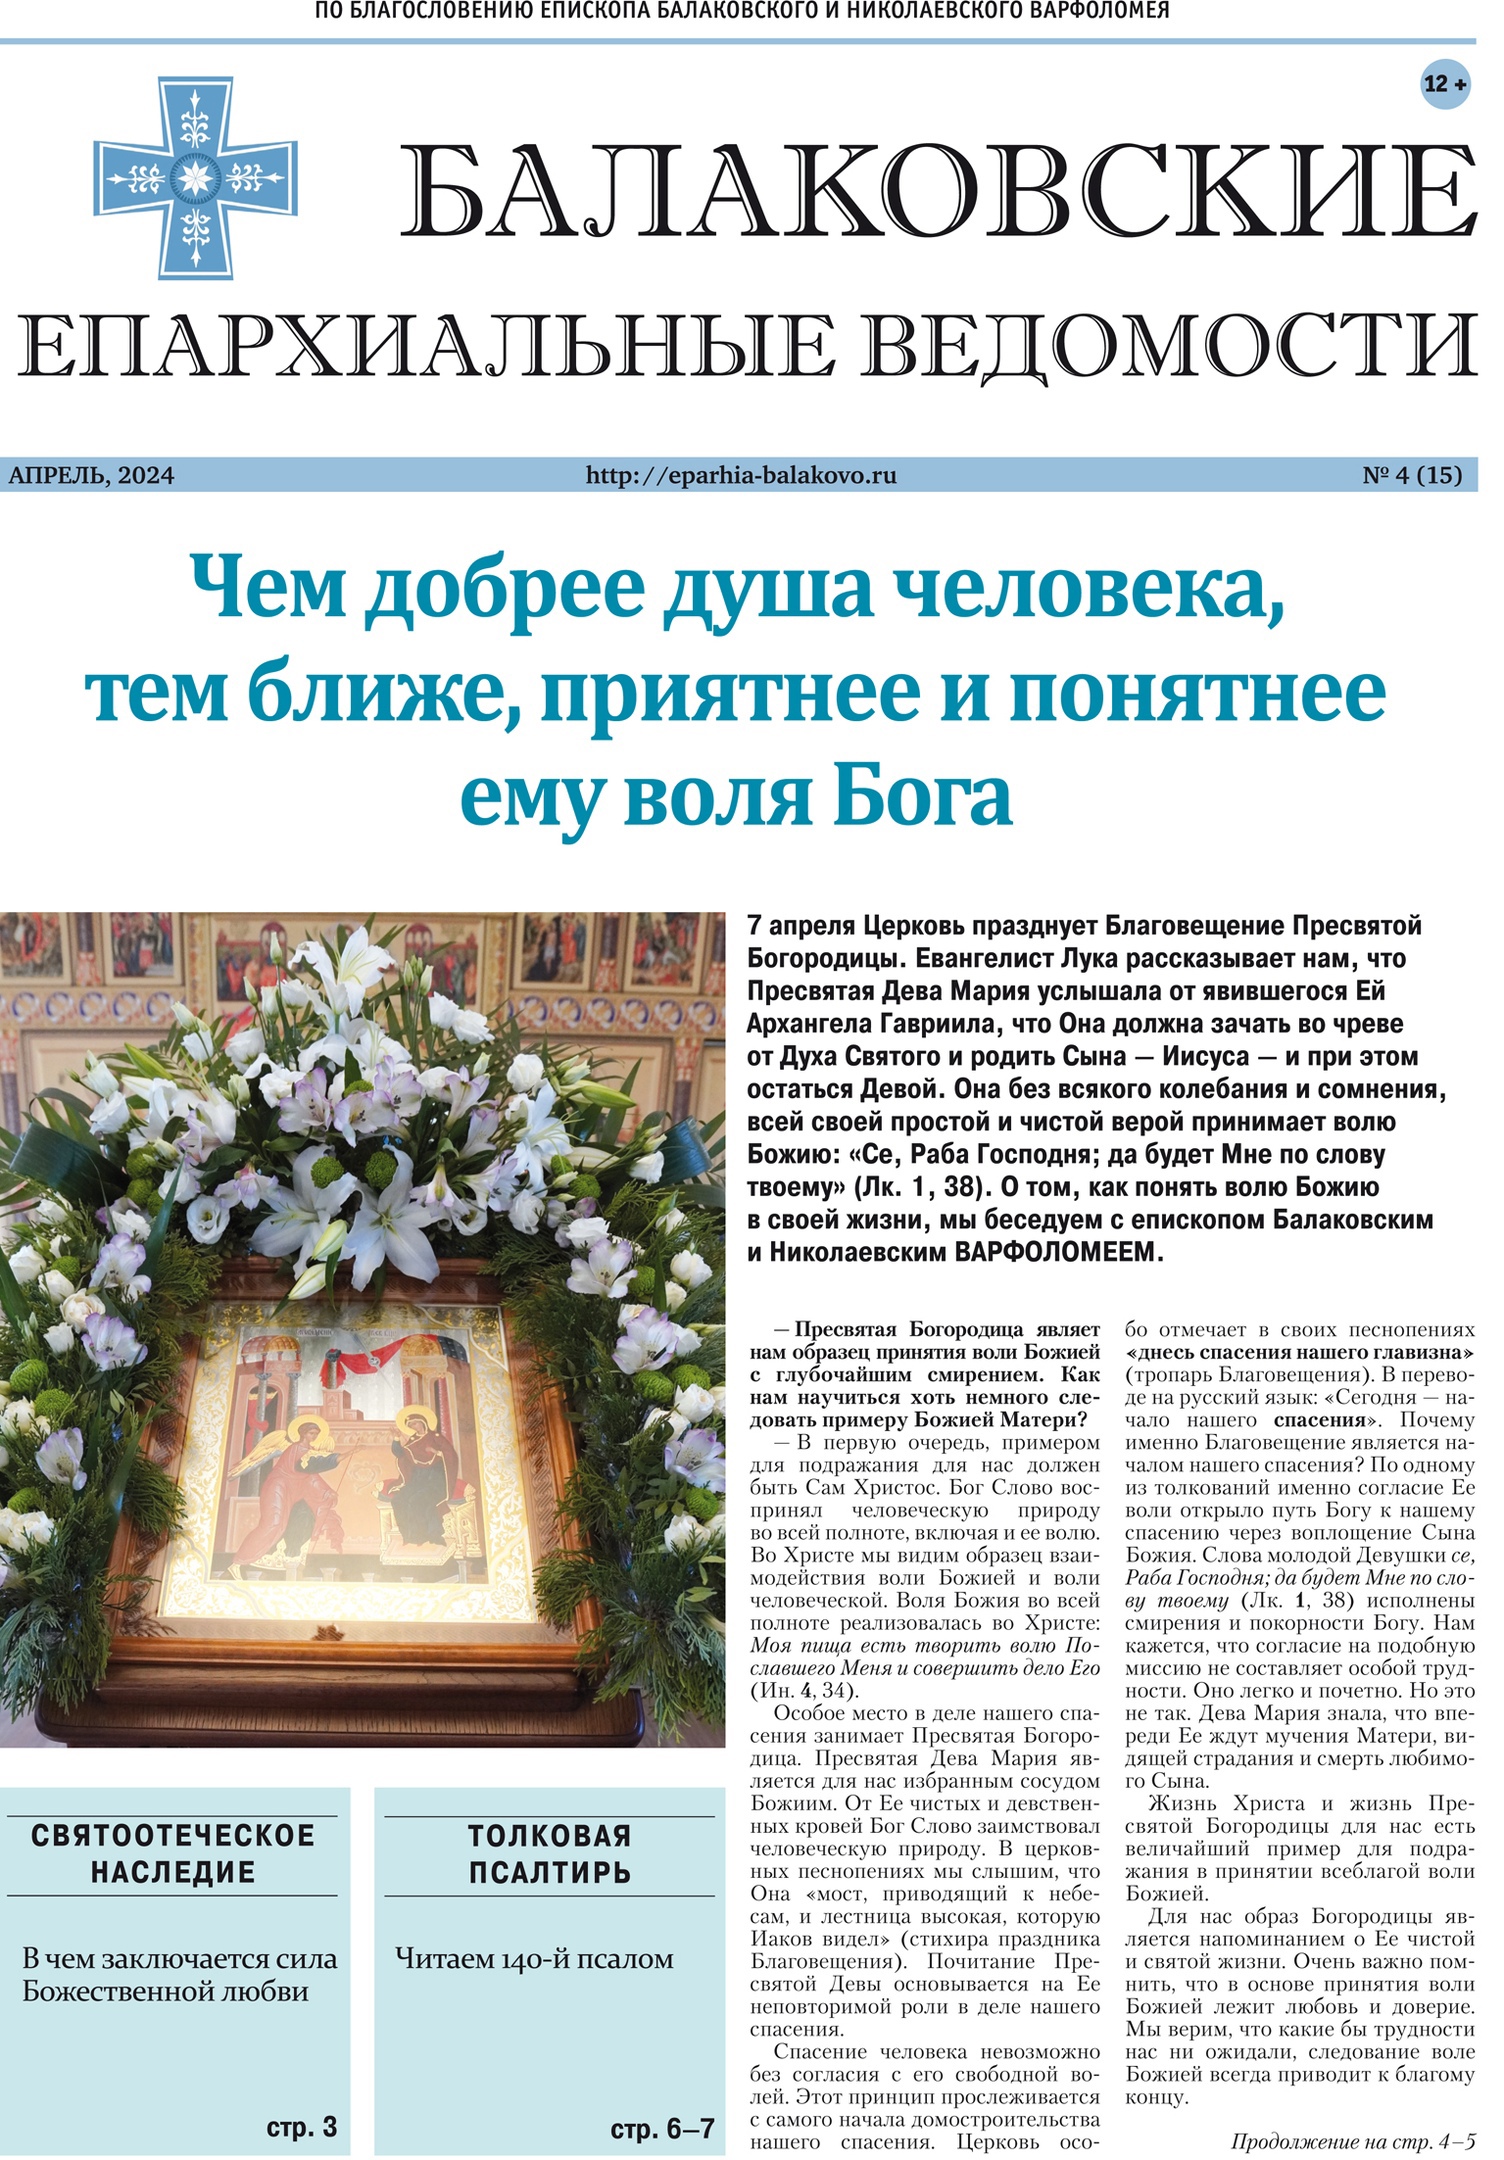 Вышел новый номер газеты Балаковской епархии «Балаковские епархиальные ведомости»